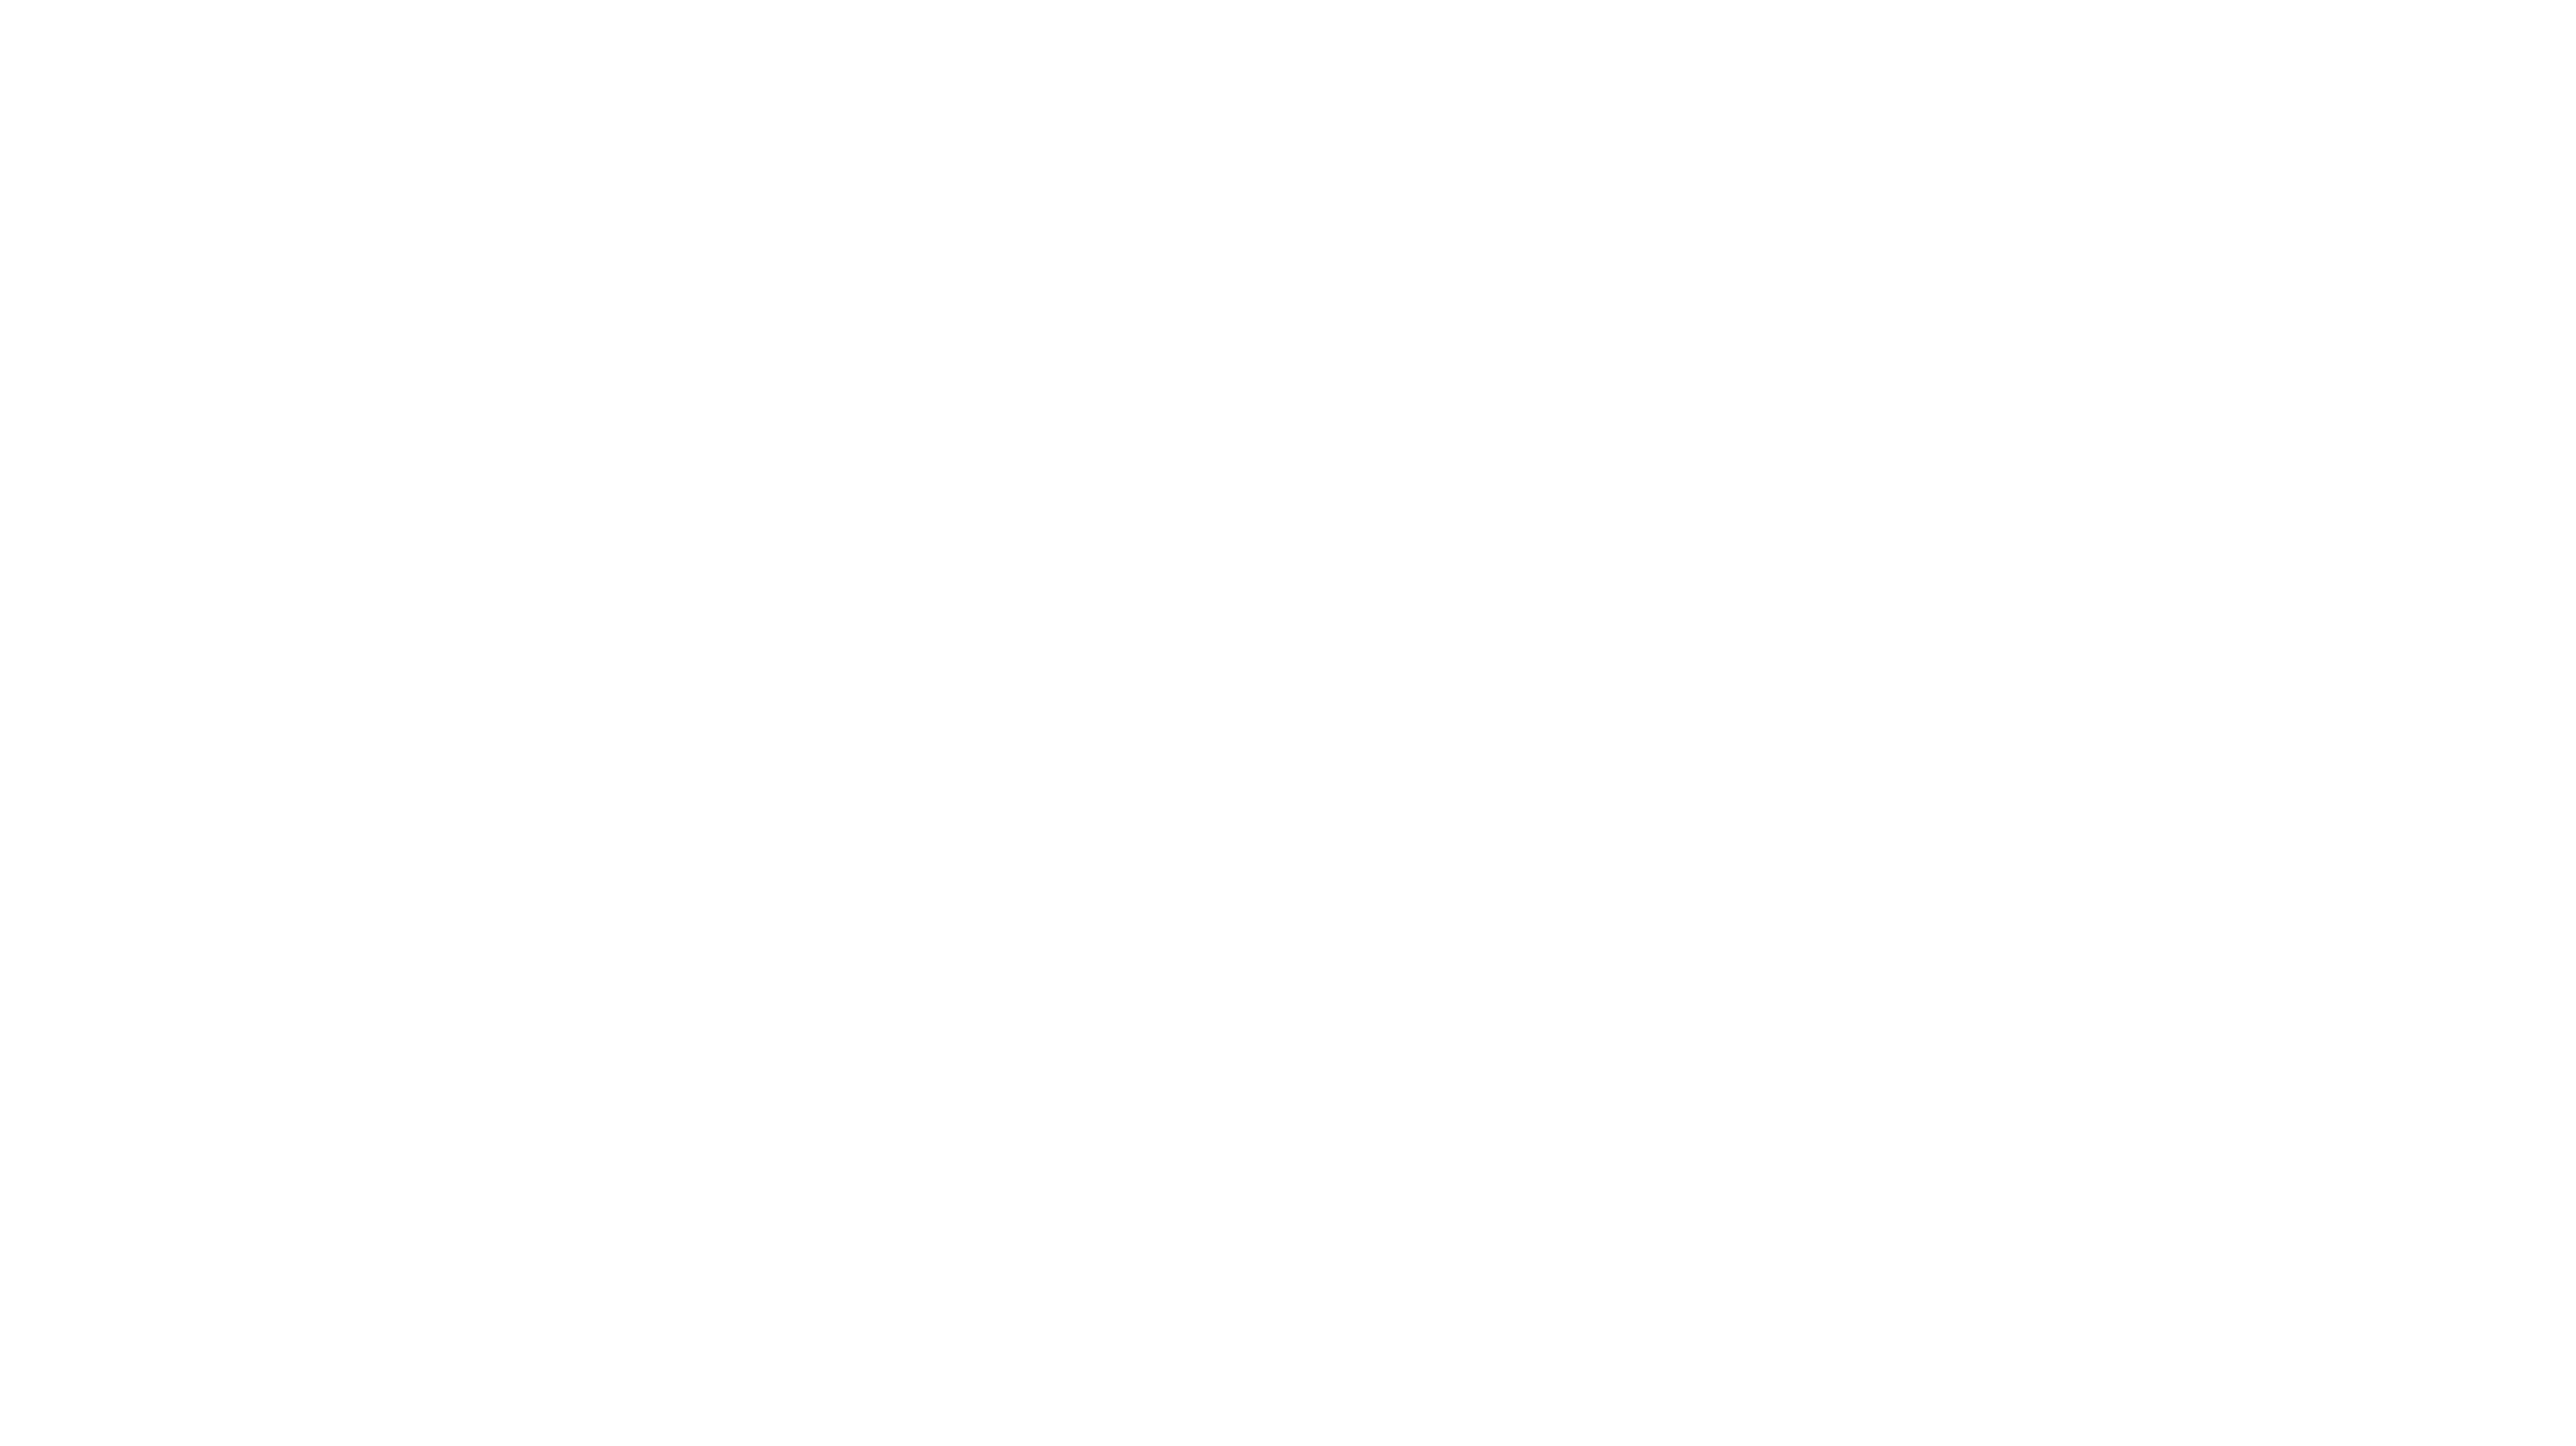 Conner White